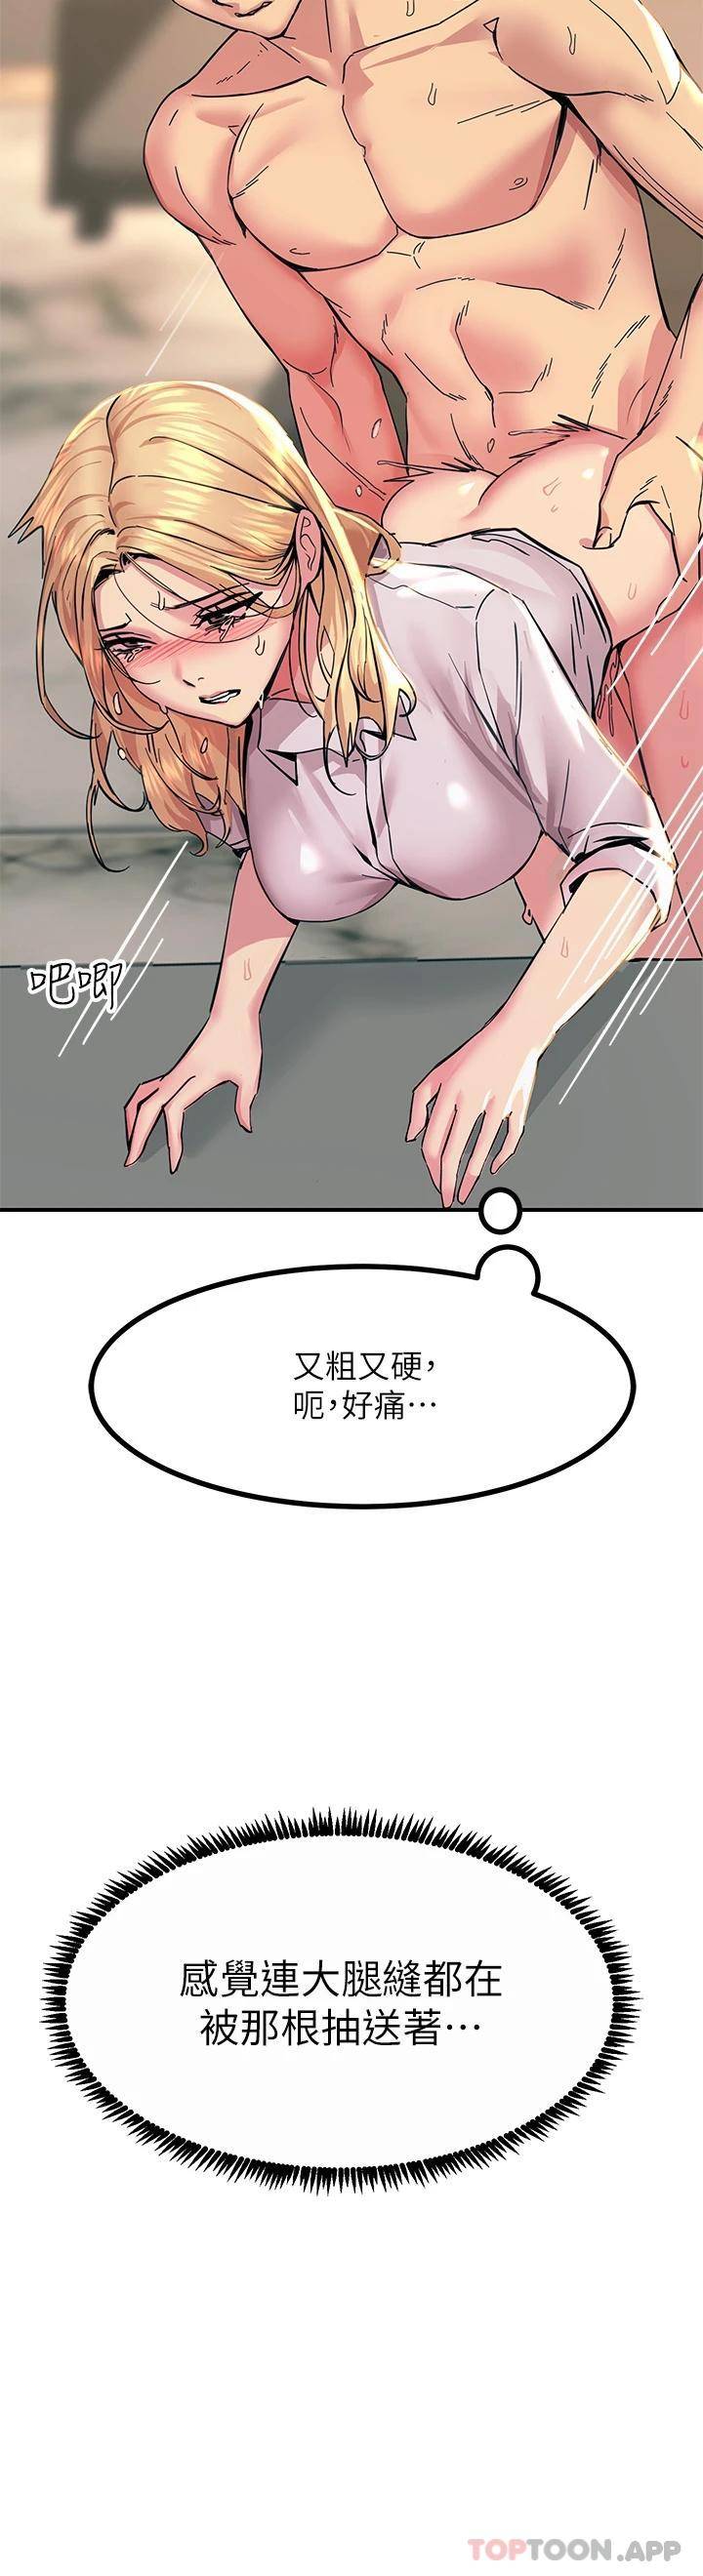 韩国污漫画 觸電大師 第16话 喜欢像母狗一样被干! 22